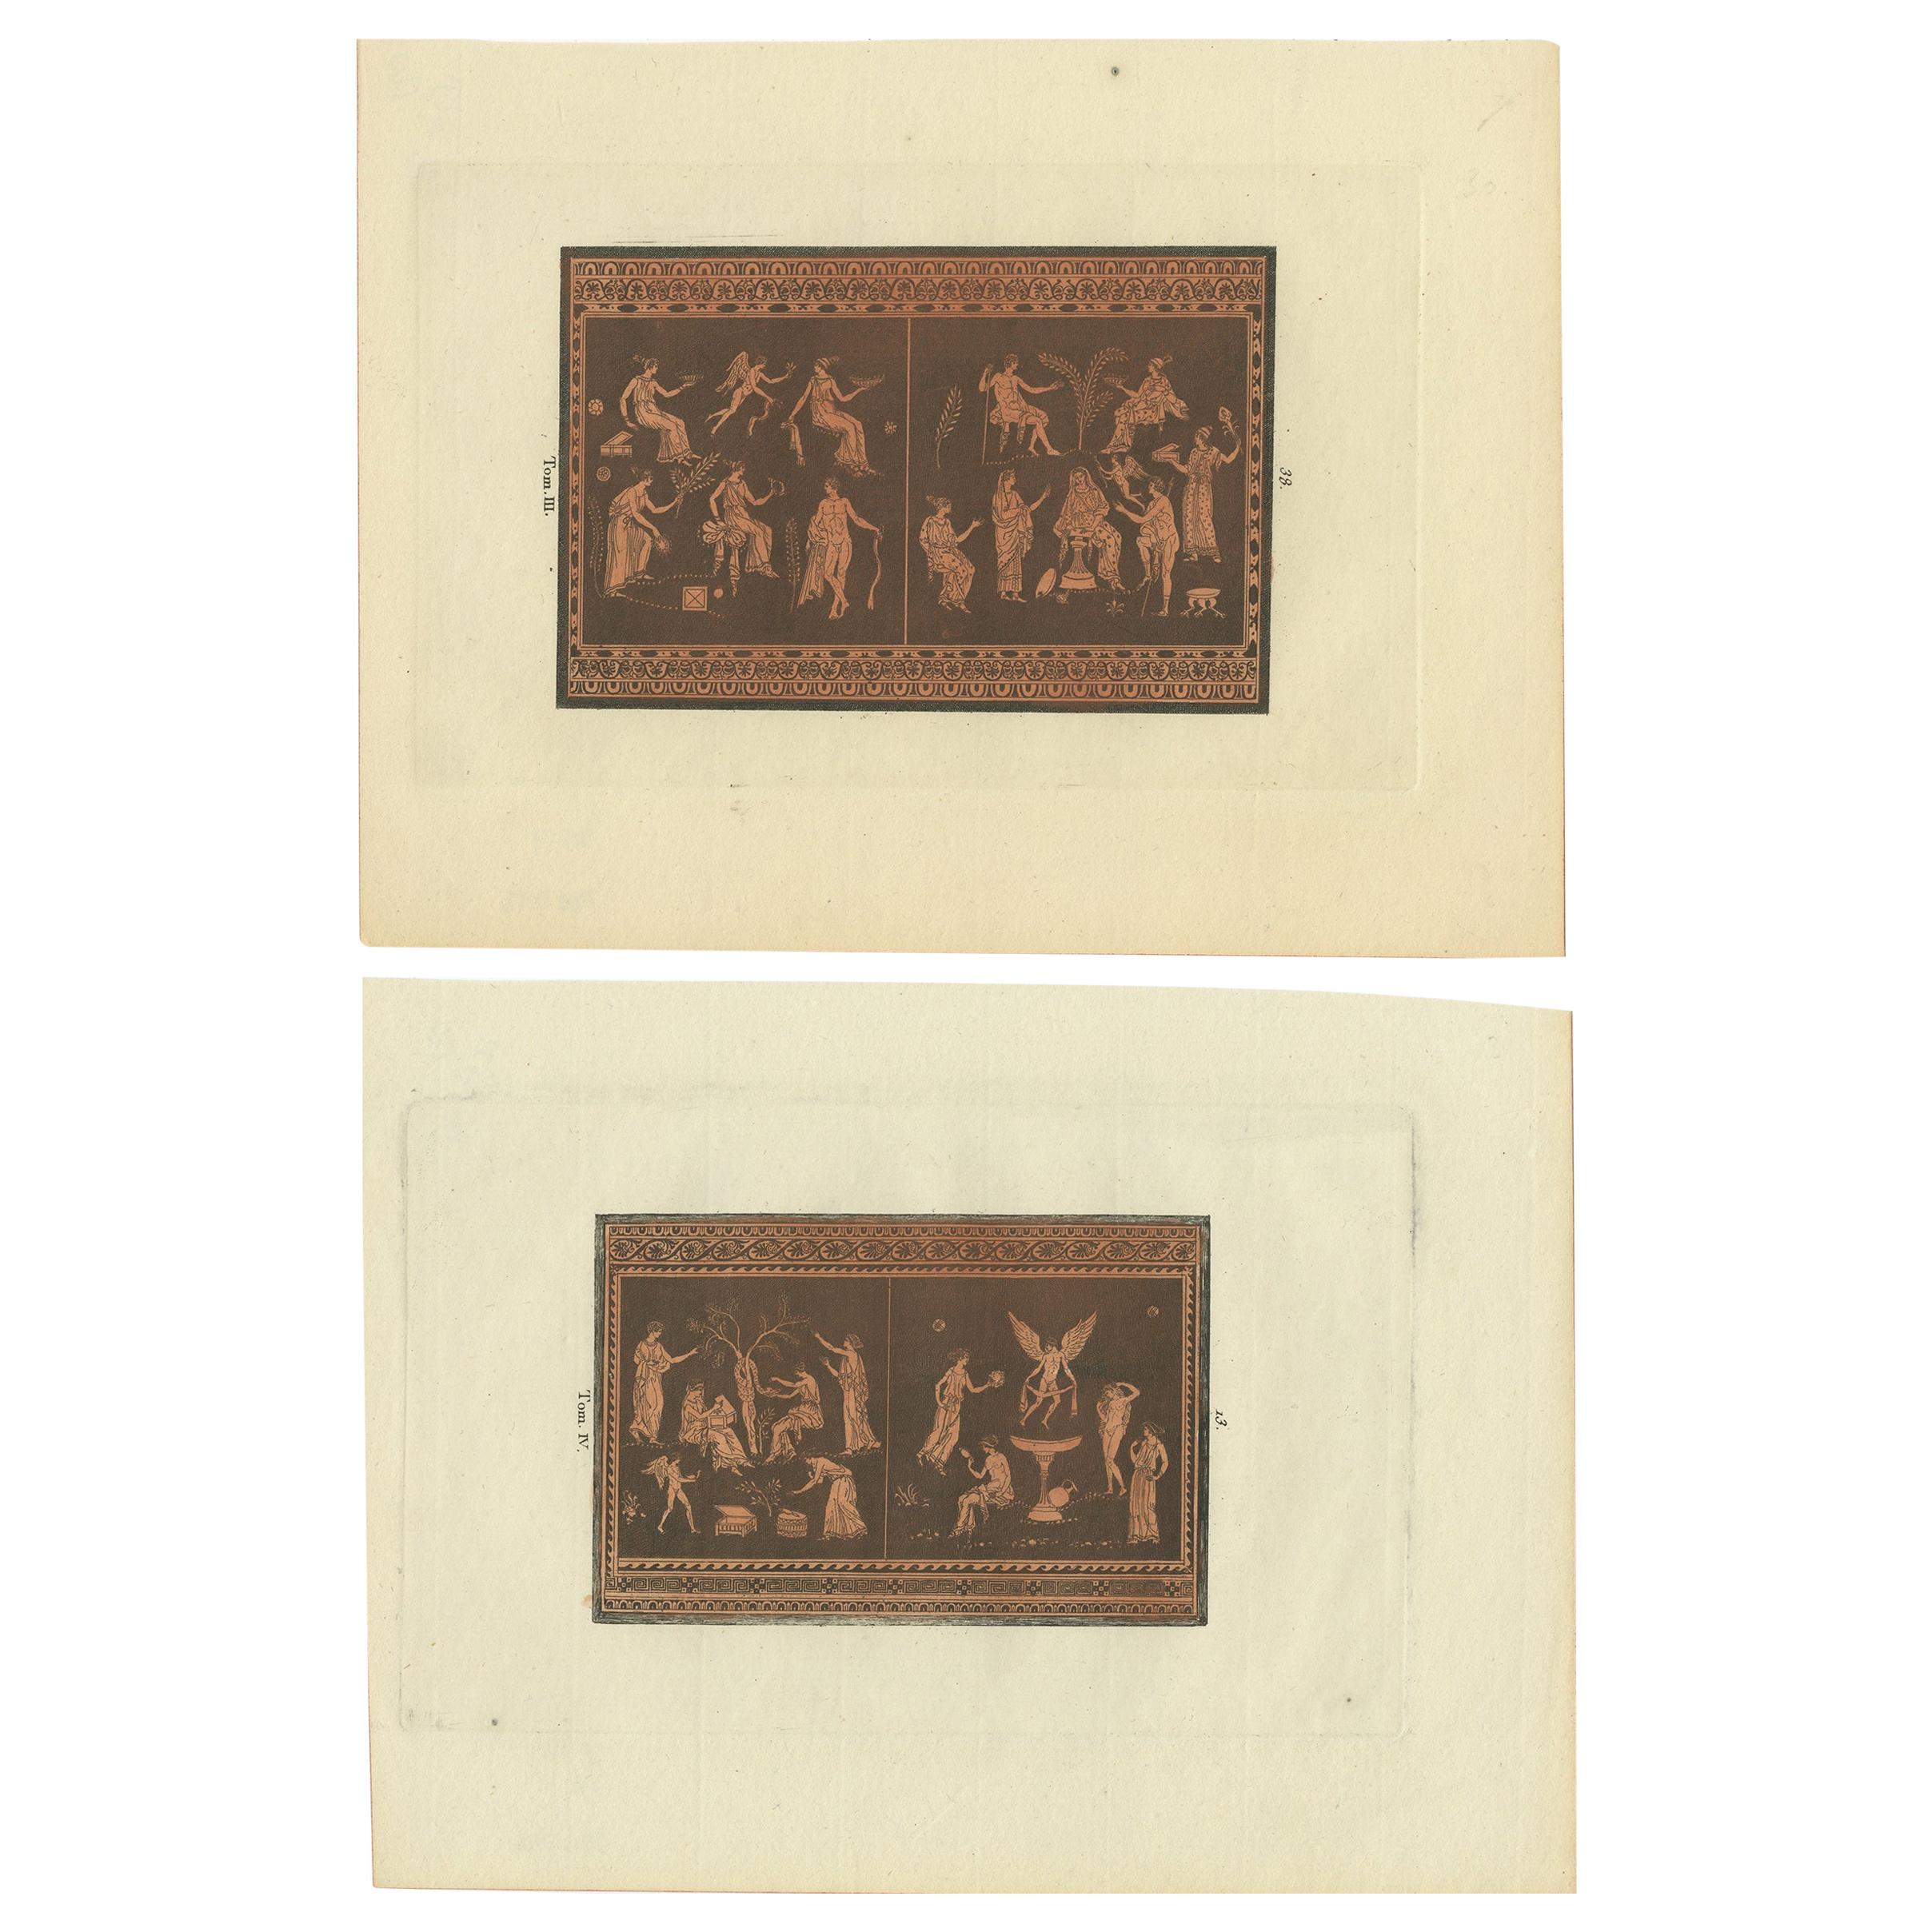 Ensemble de 2 estampes anciennes représentant diverses figures et scènes, vers 1840